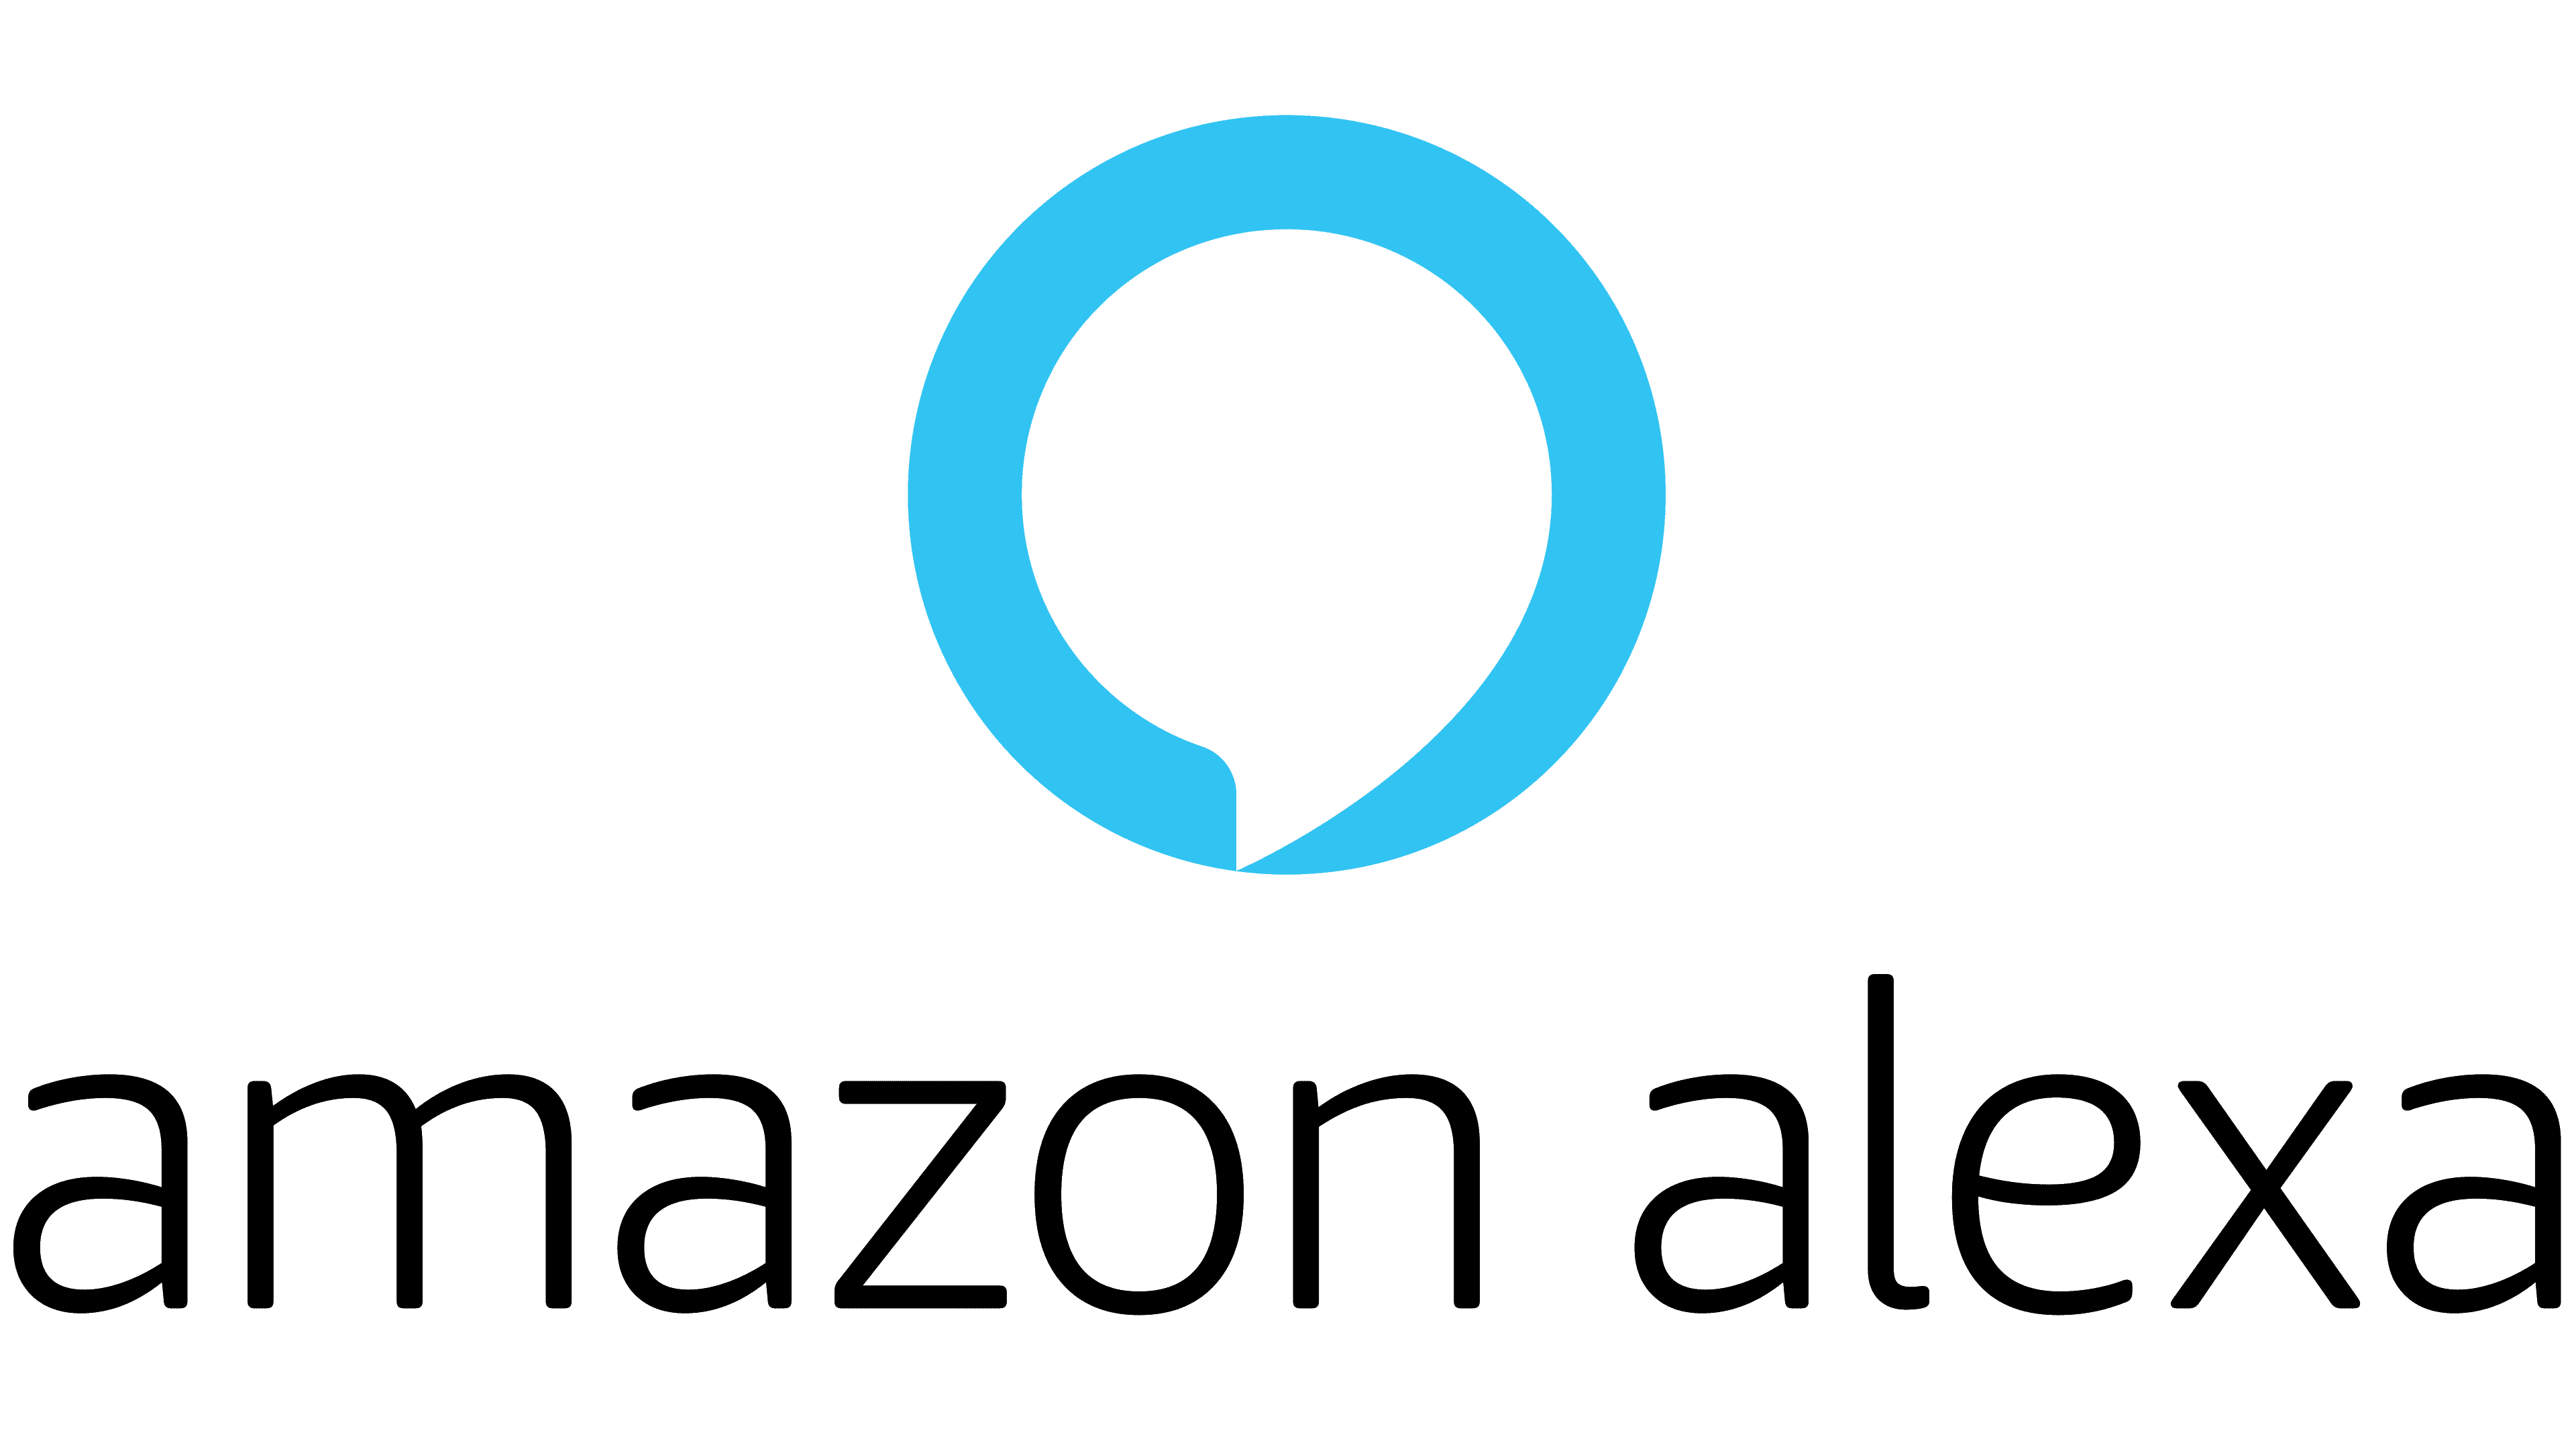 Amazon Alexa. Alexa от Amazon. Amazon Alexa logo. Amazon Alexa голосовой помощник.